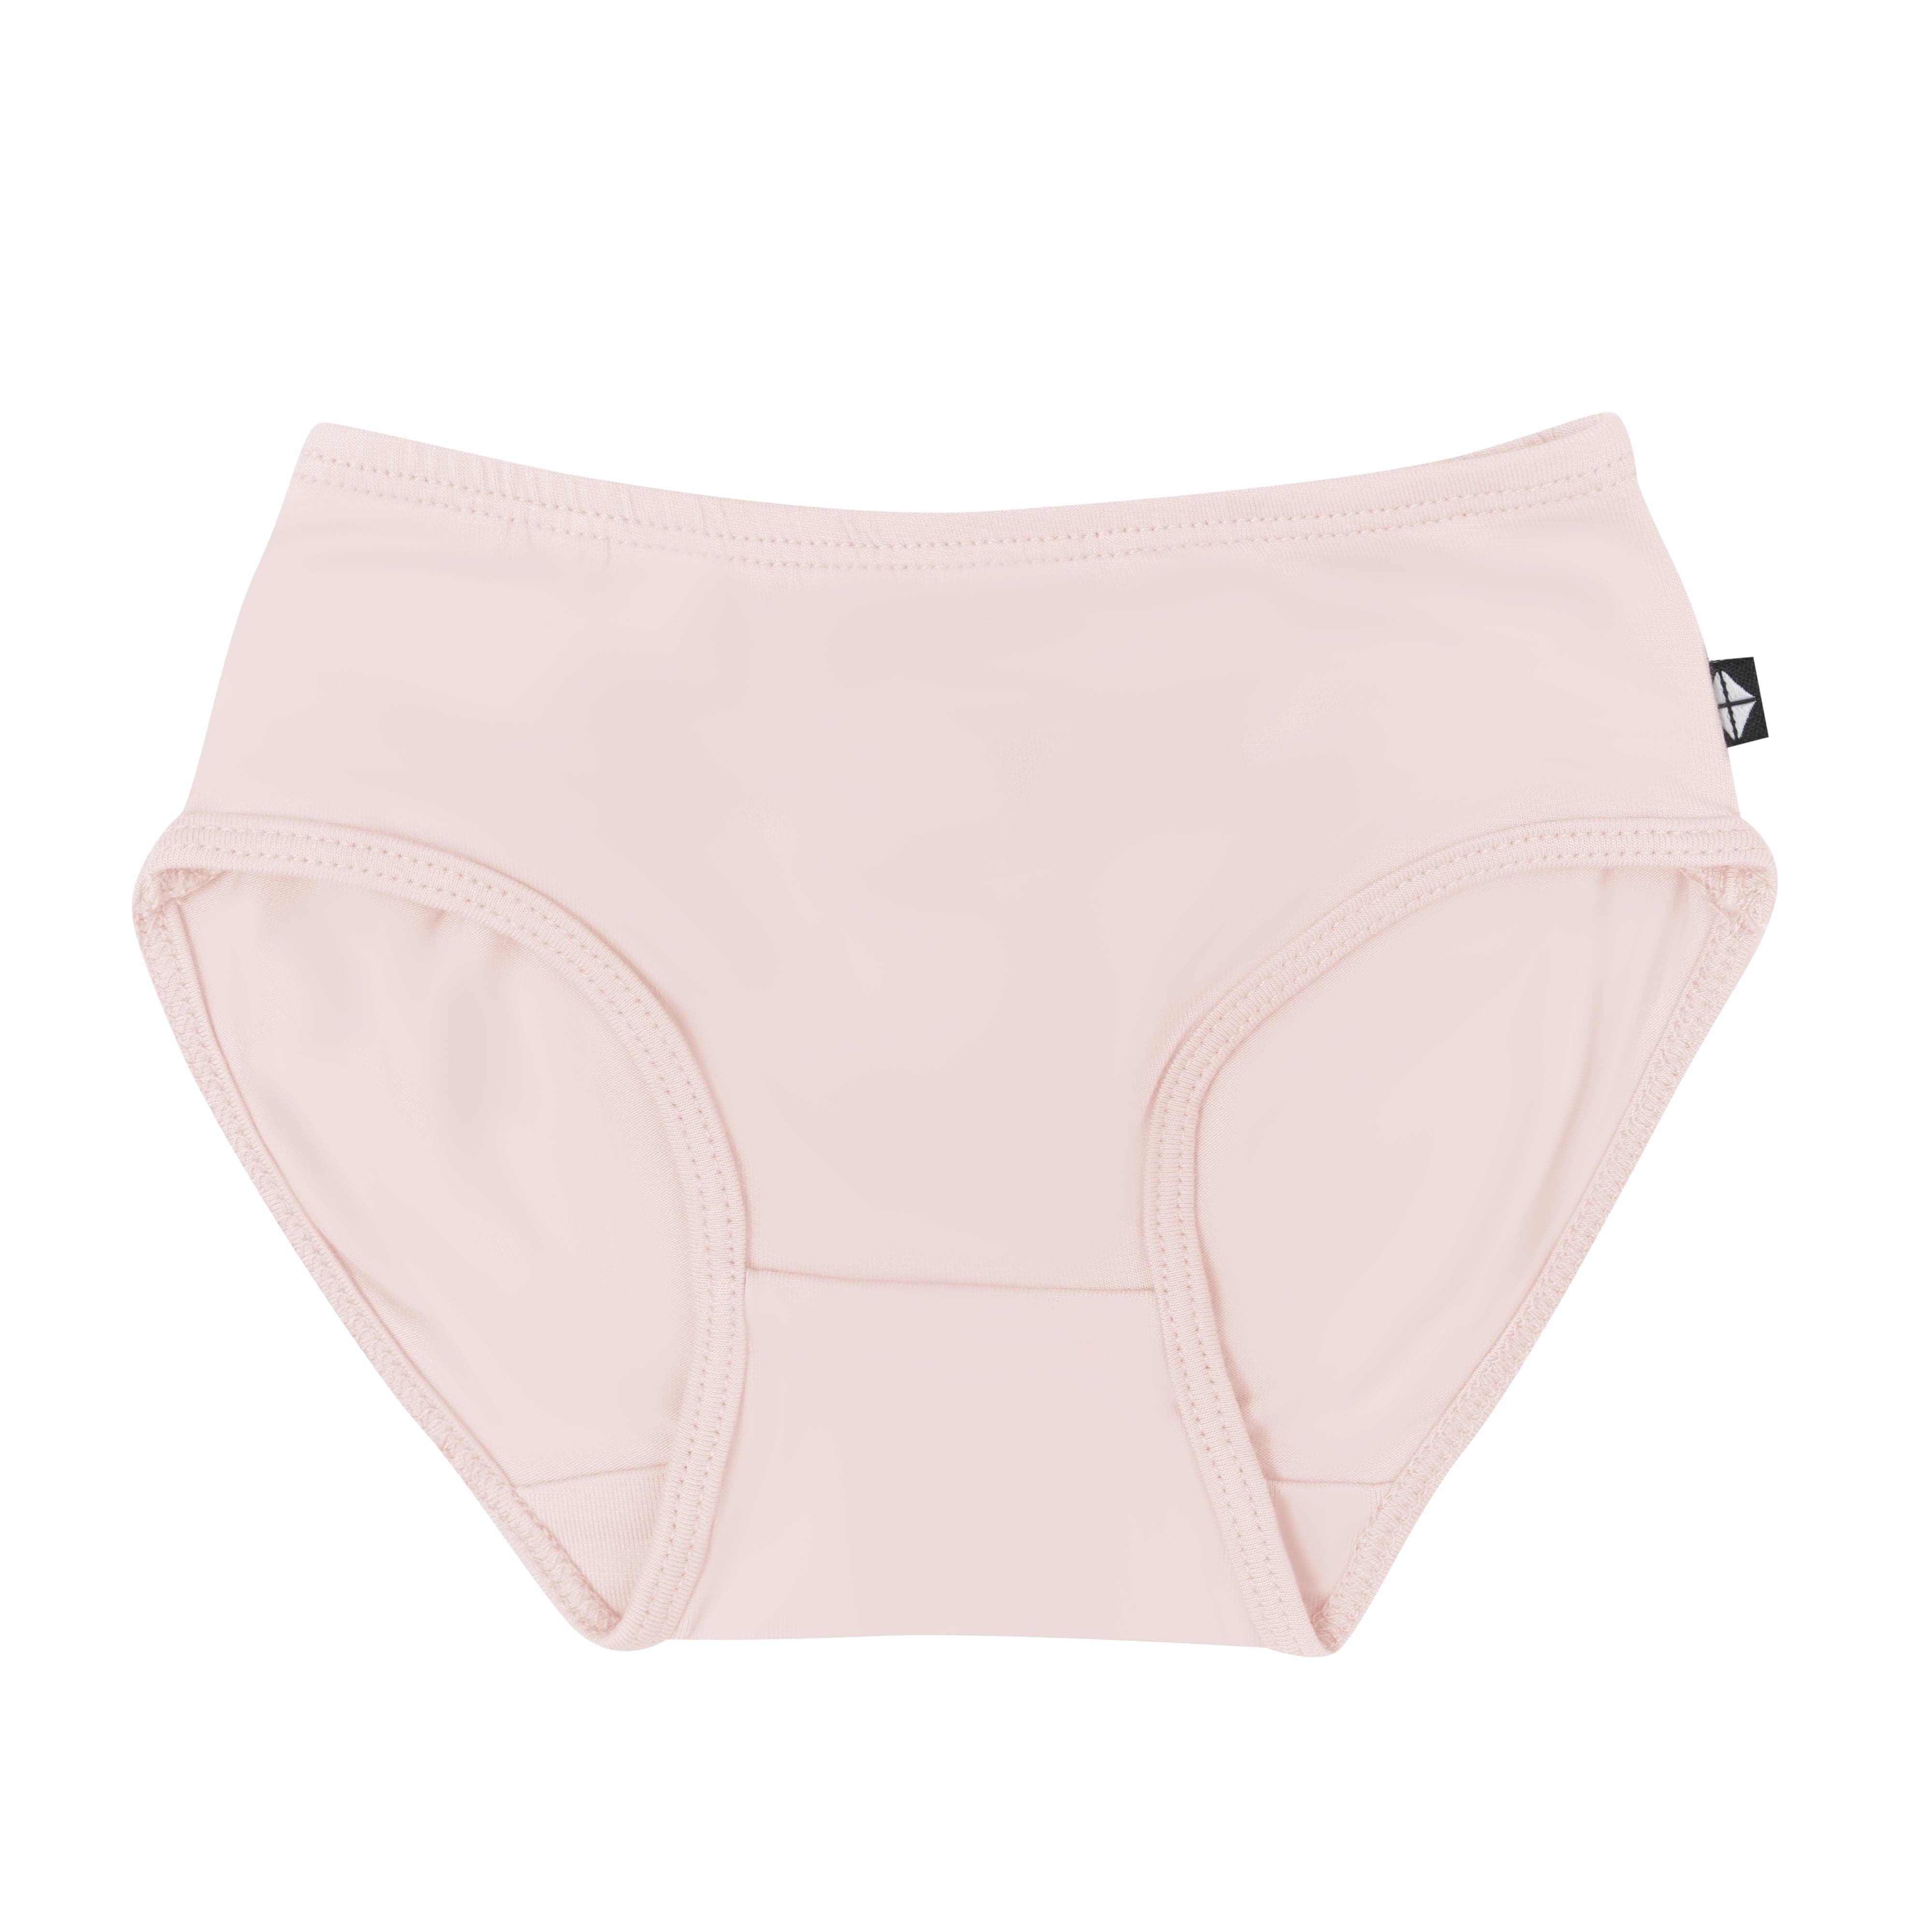 http://kytebaby.com/cdn/shop/files/kyte-baby-underwear-undies-in-blush-32434928091247.jpg?v=1690574645